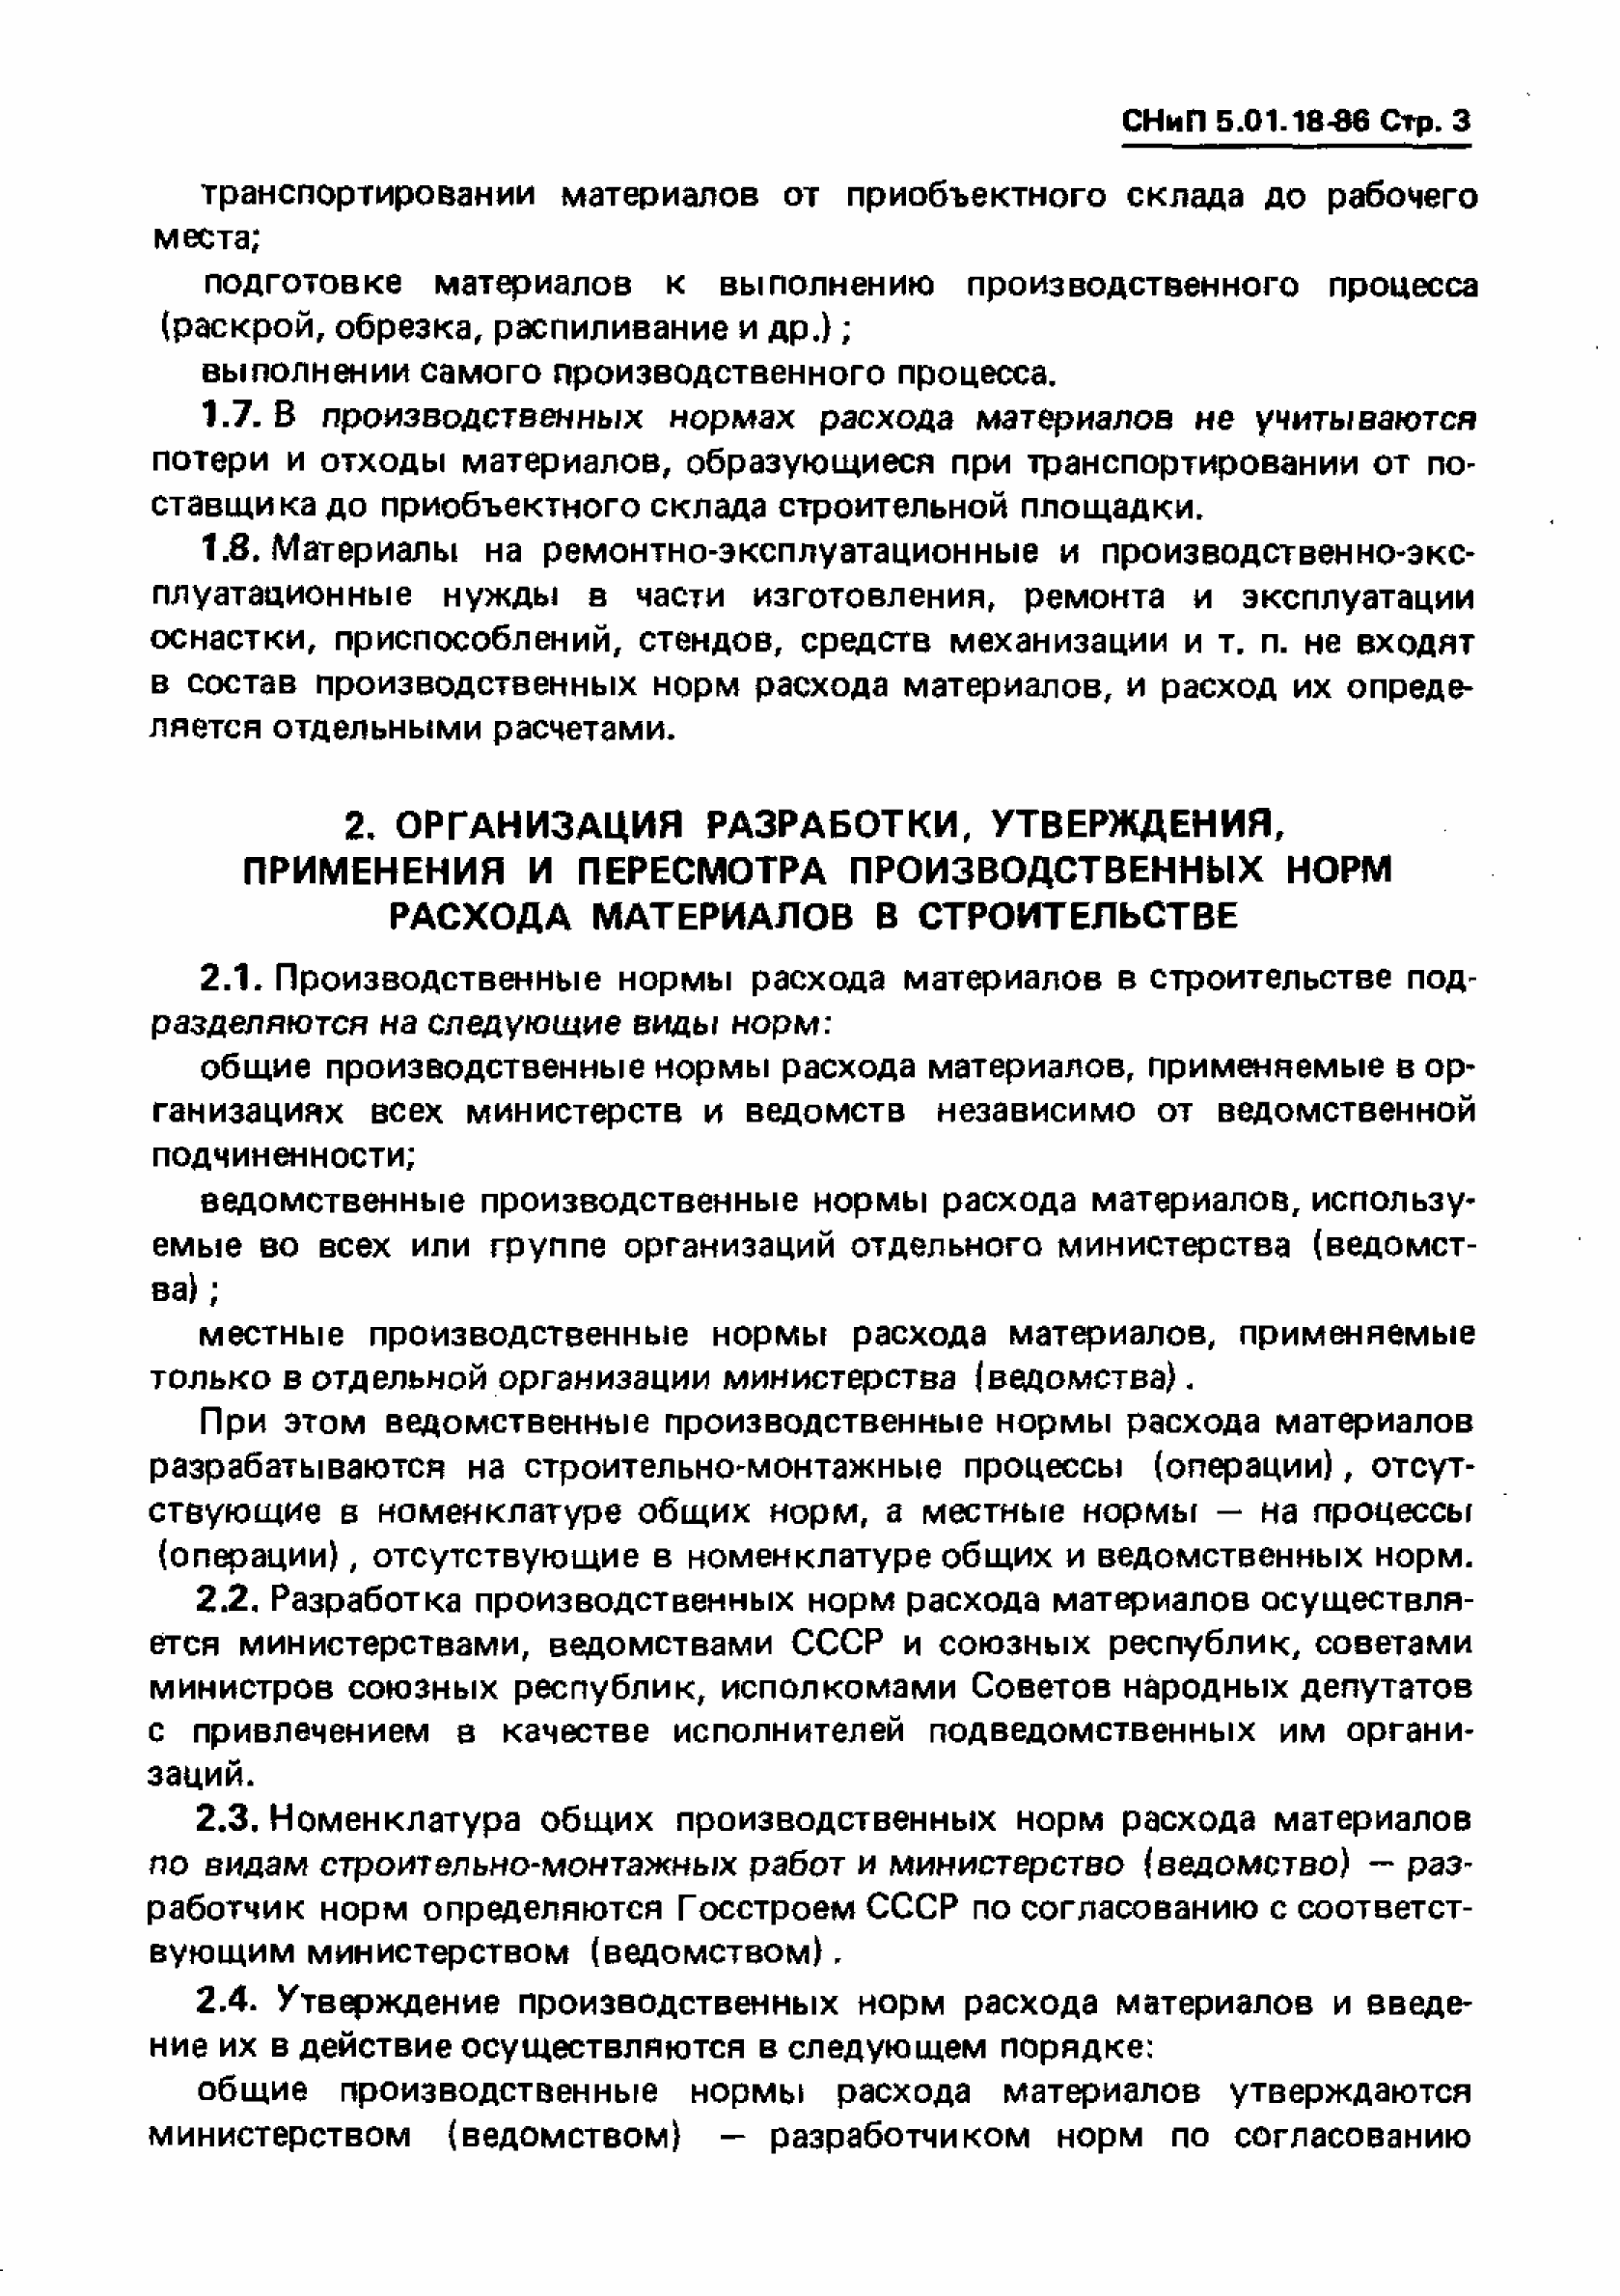 СНиП 5.01.18-86